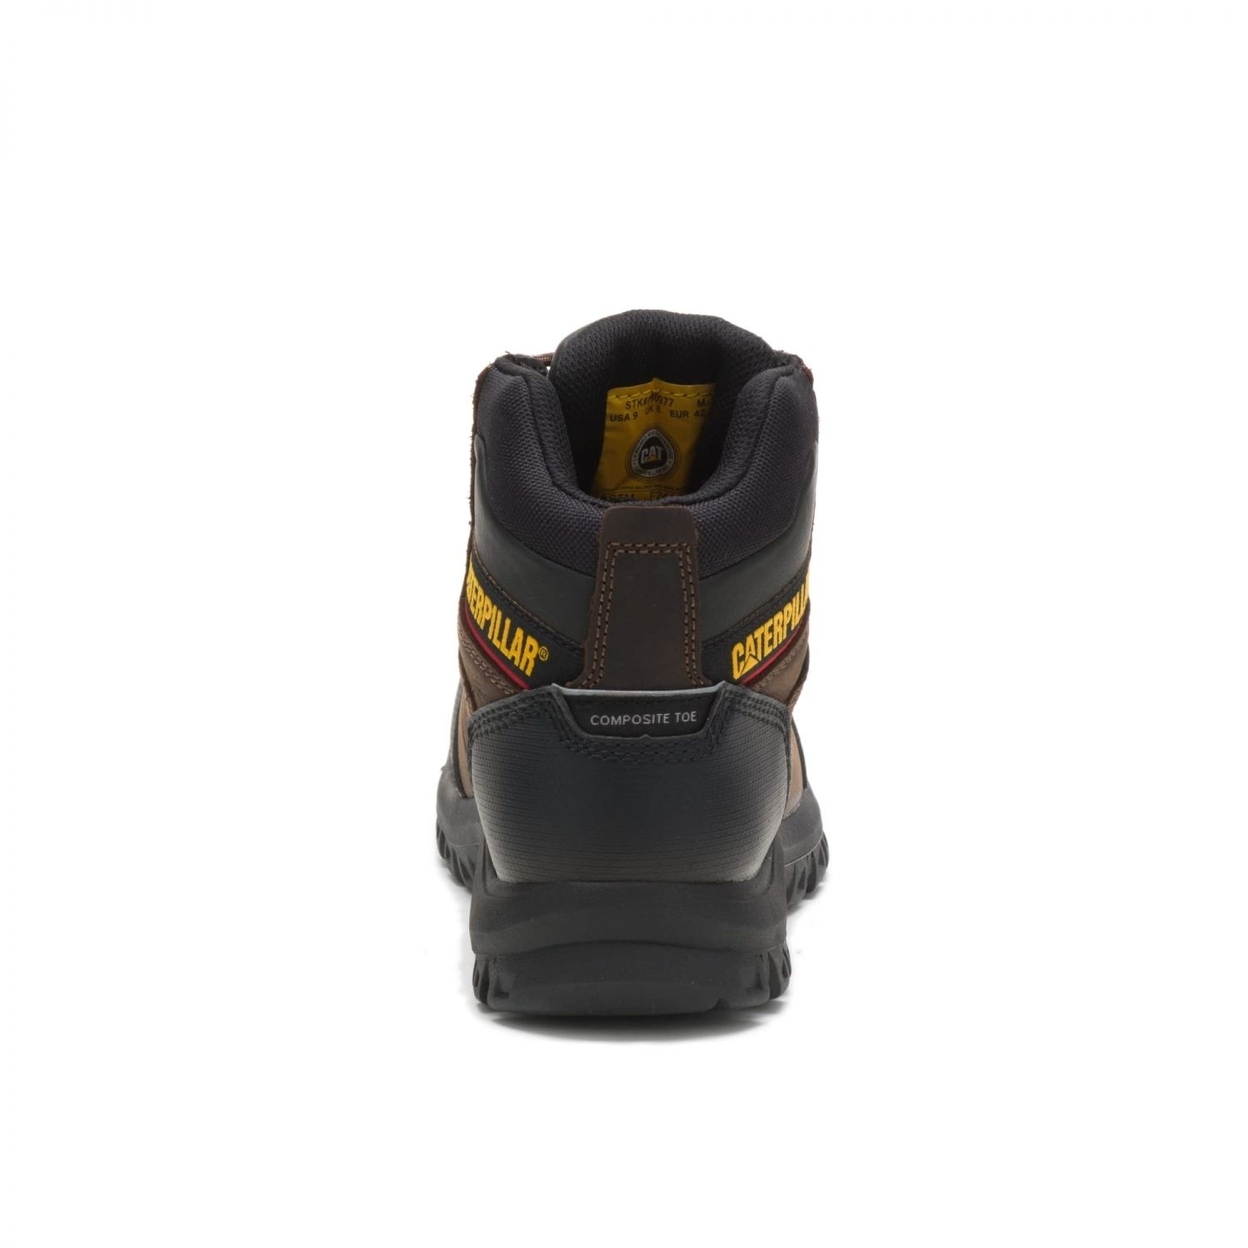 Cat Footwear Men's Resorption Composite Toe Waterproof Industrial Boot BLACK - BLACK, 9-M